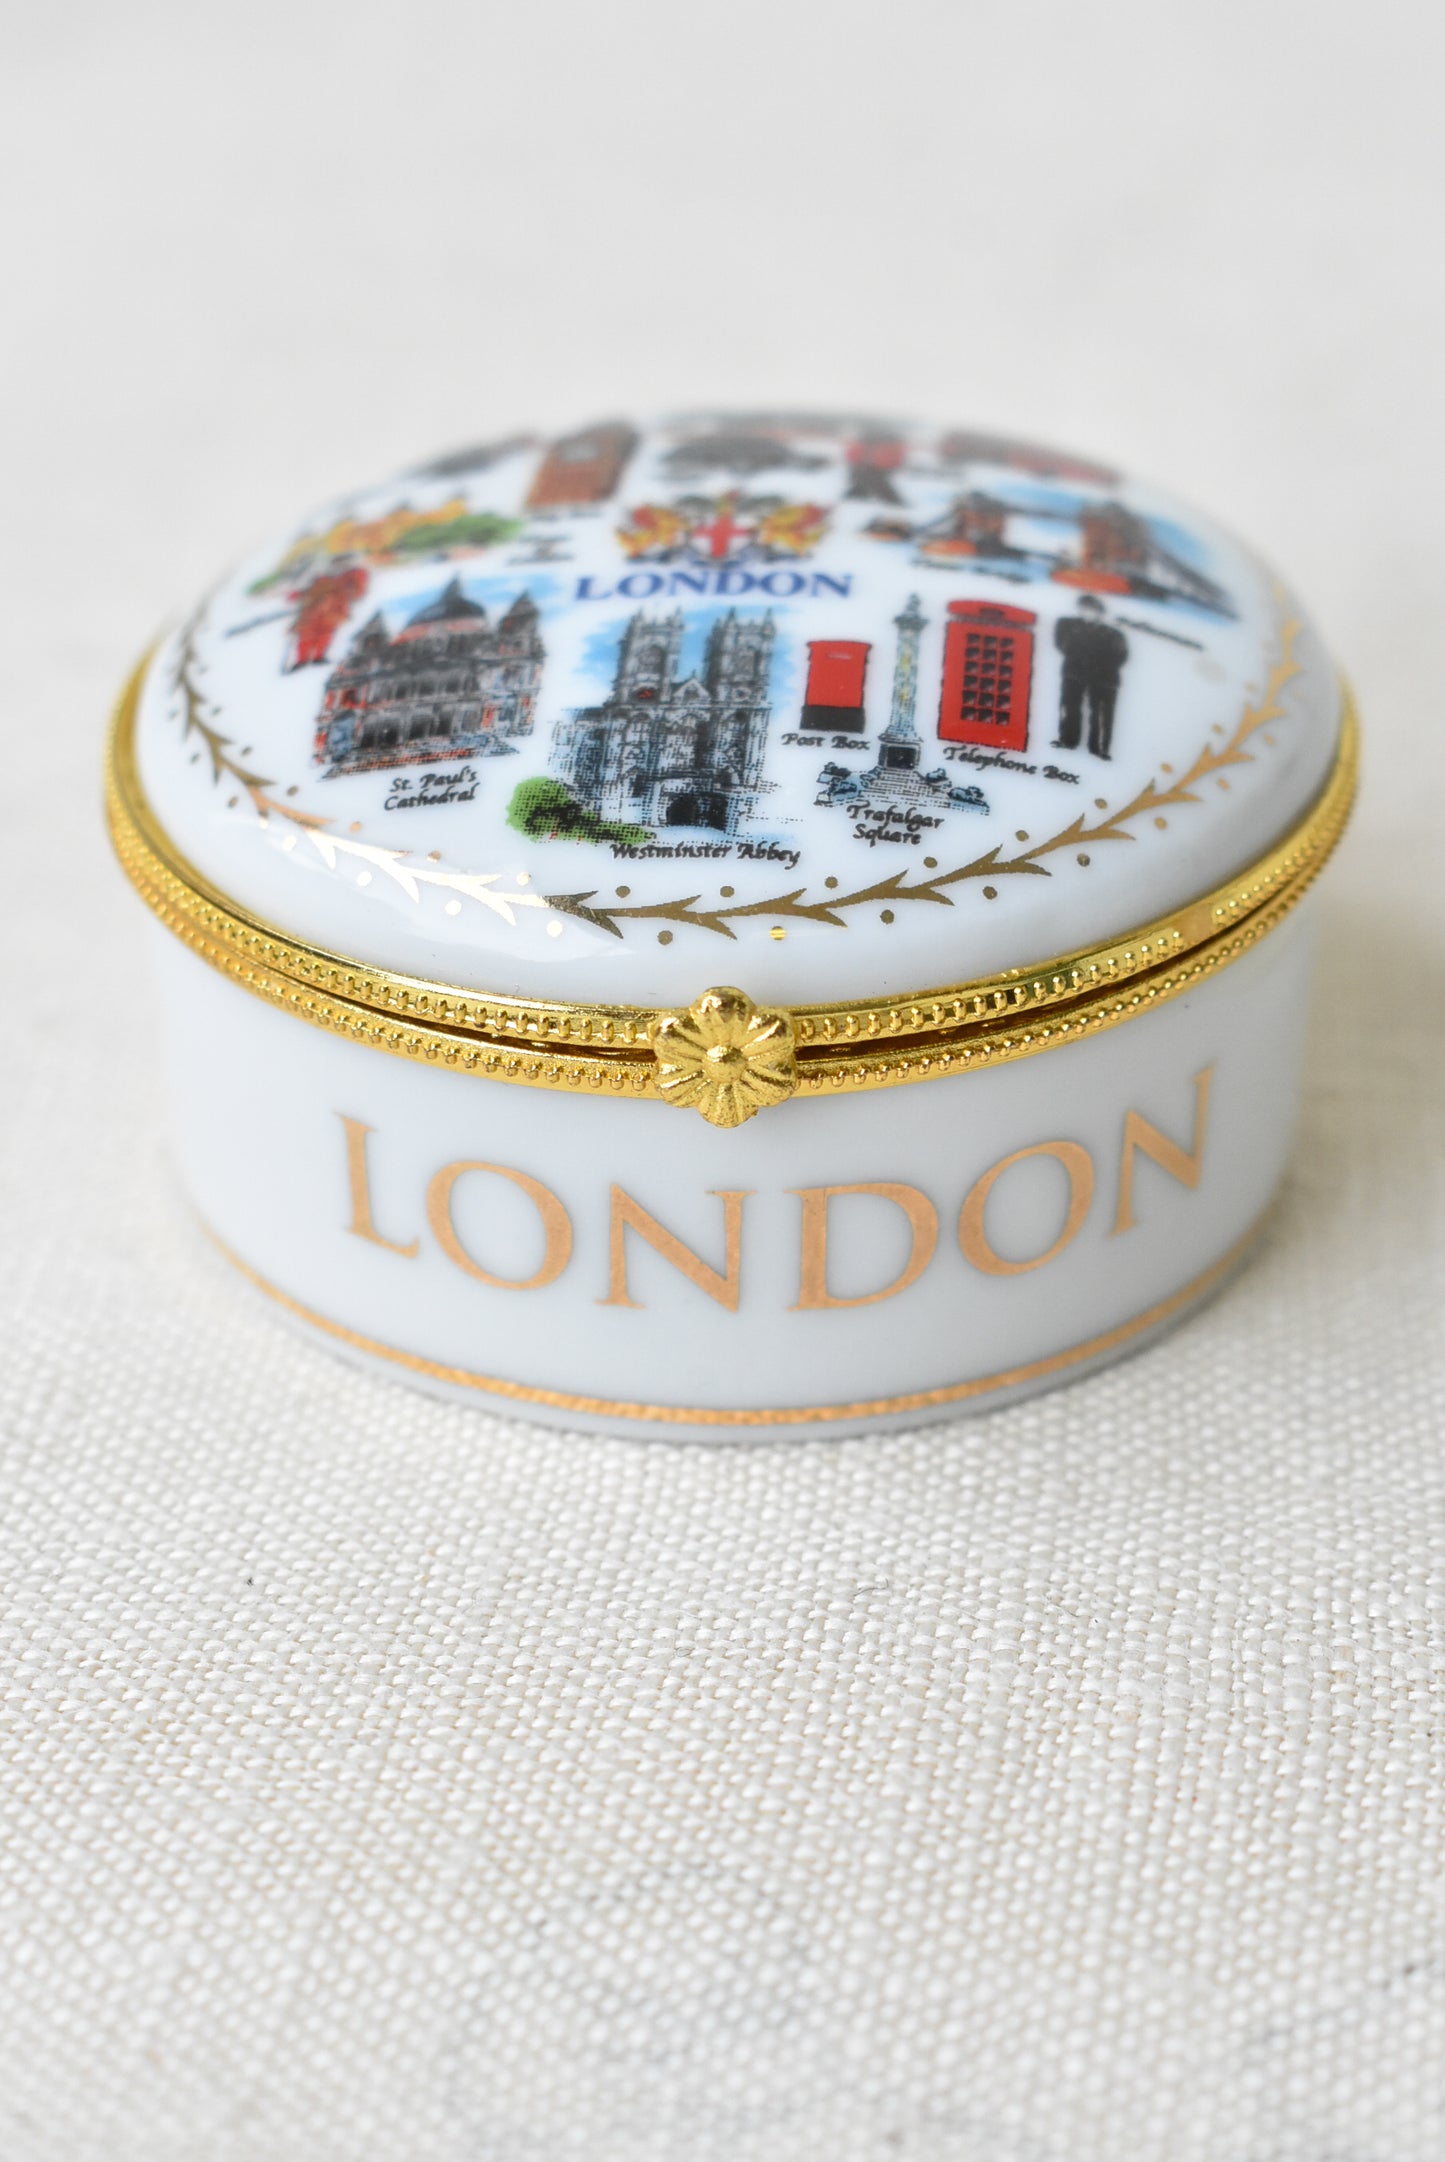 London porcelain trinket box